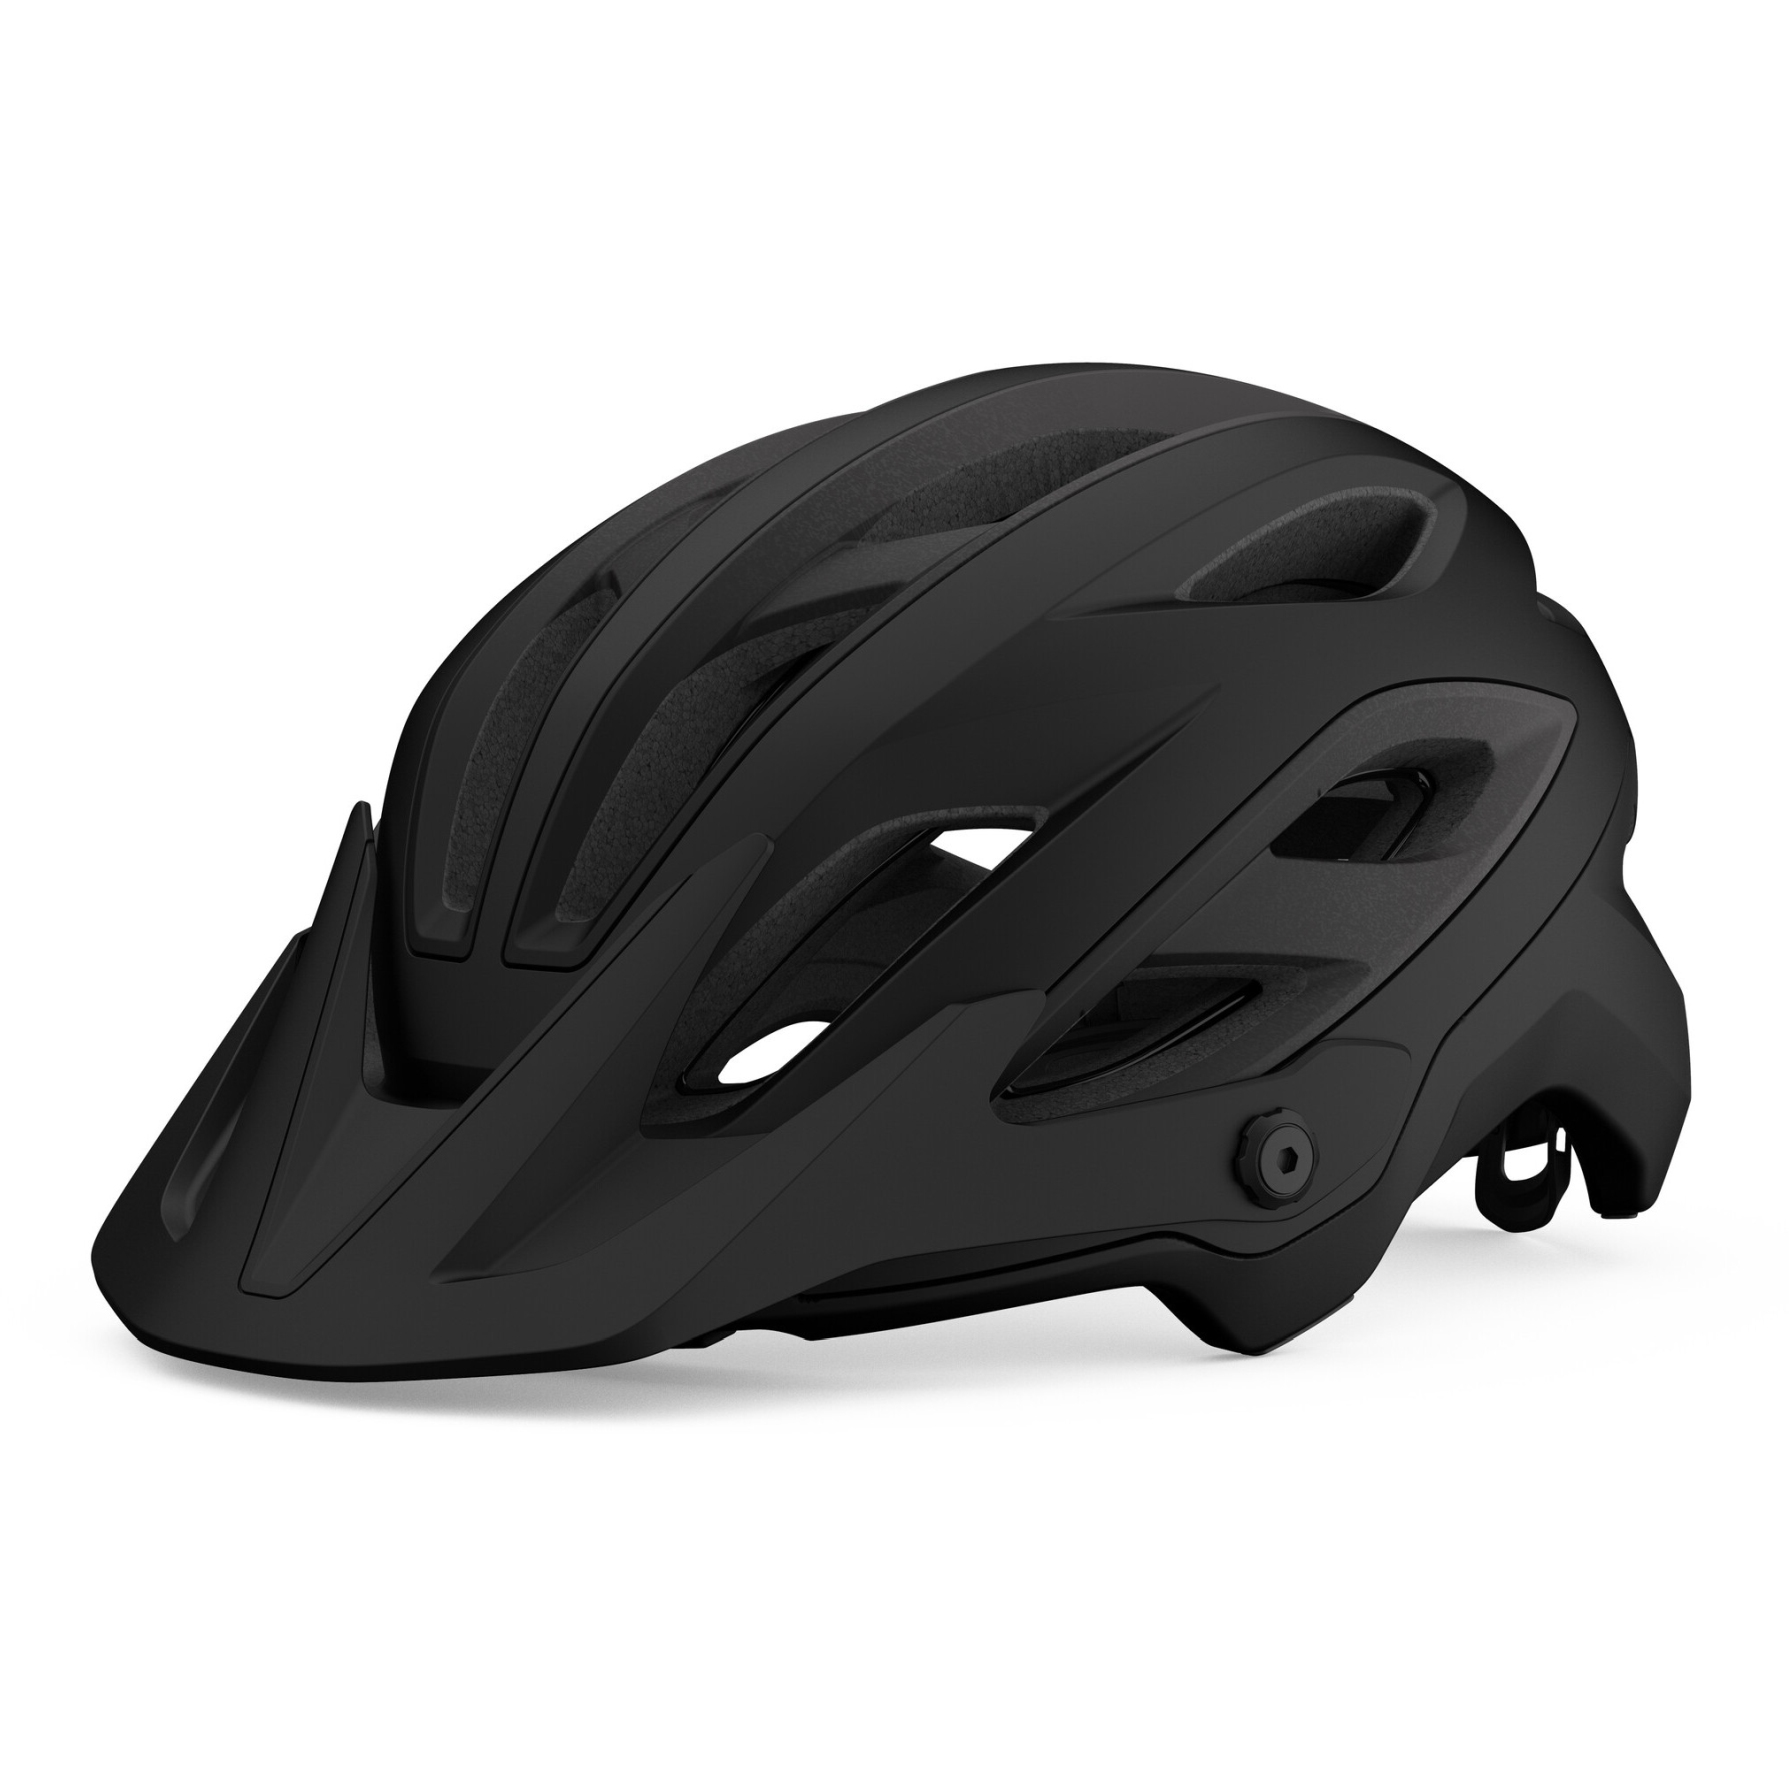 Produktbild von Giro Merit Spherical MTB Helm - matte black/gloss black